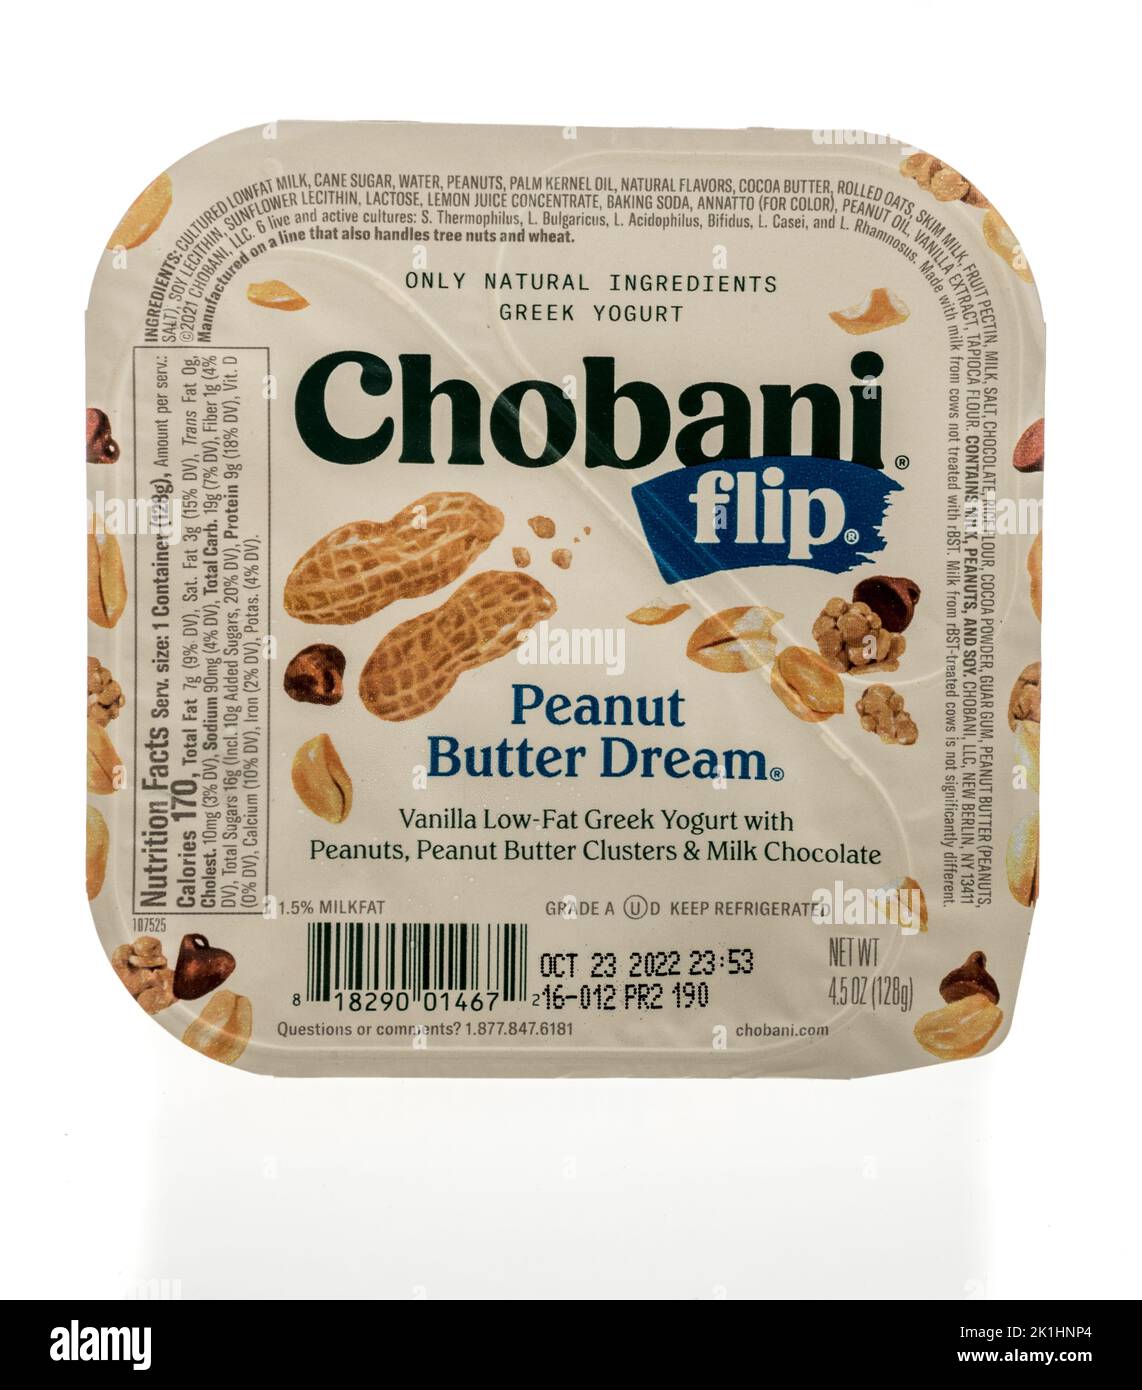 Winneconne, WI - 18 de septiembre de 2022: Un paquete de chobani flip maní mantequilla sueño griego yogur sobre un fondo aislado. Foto de stock